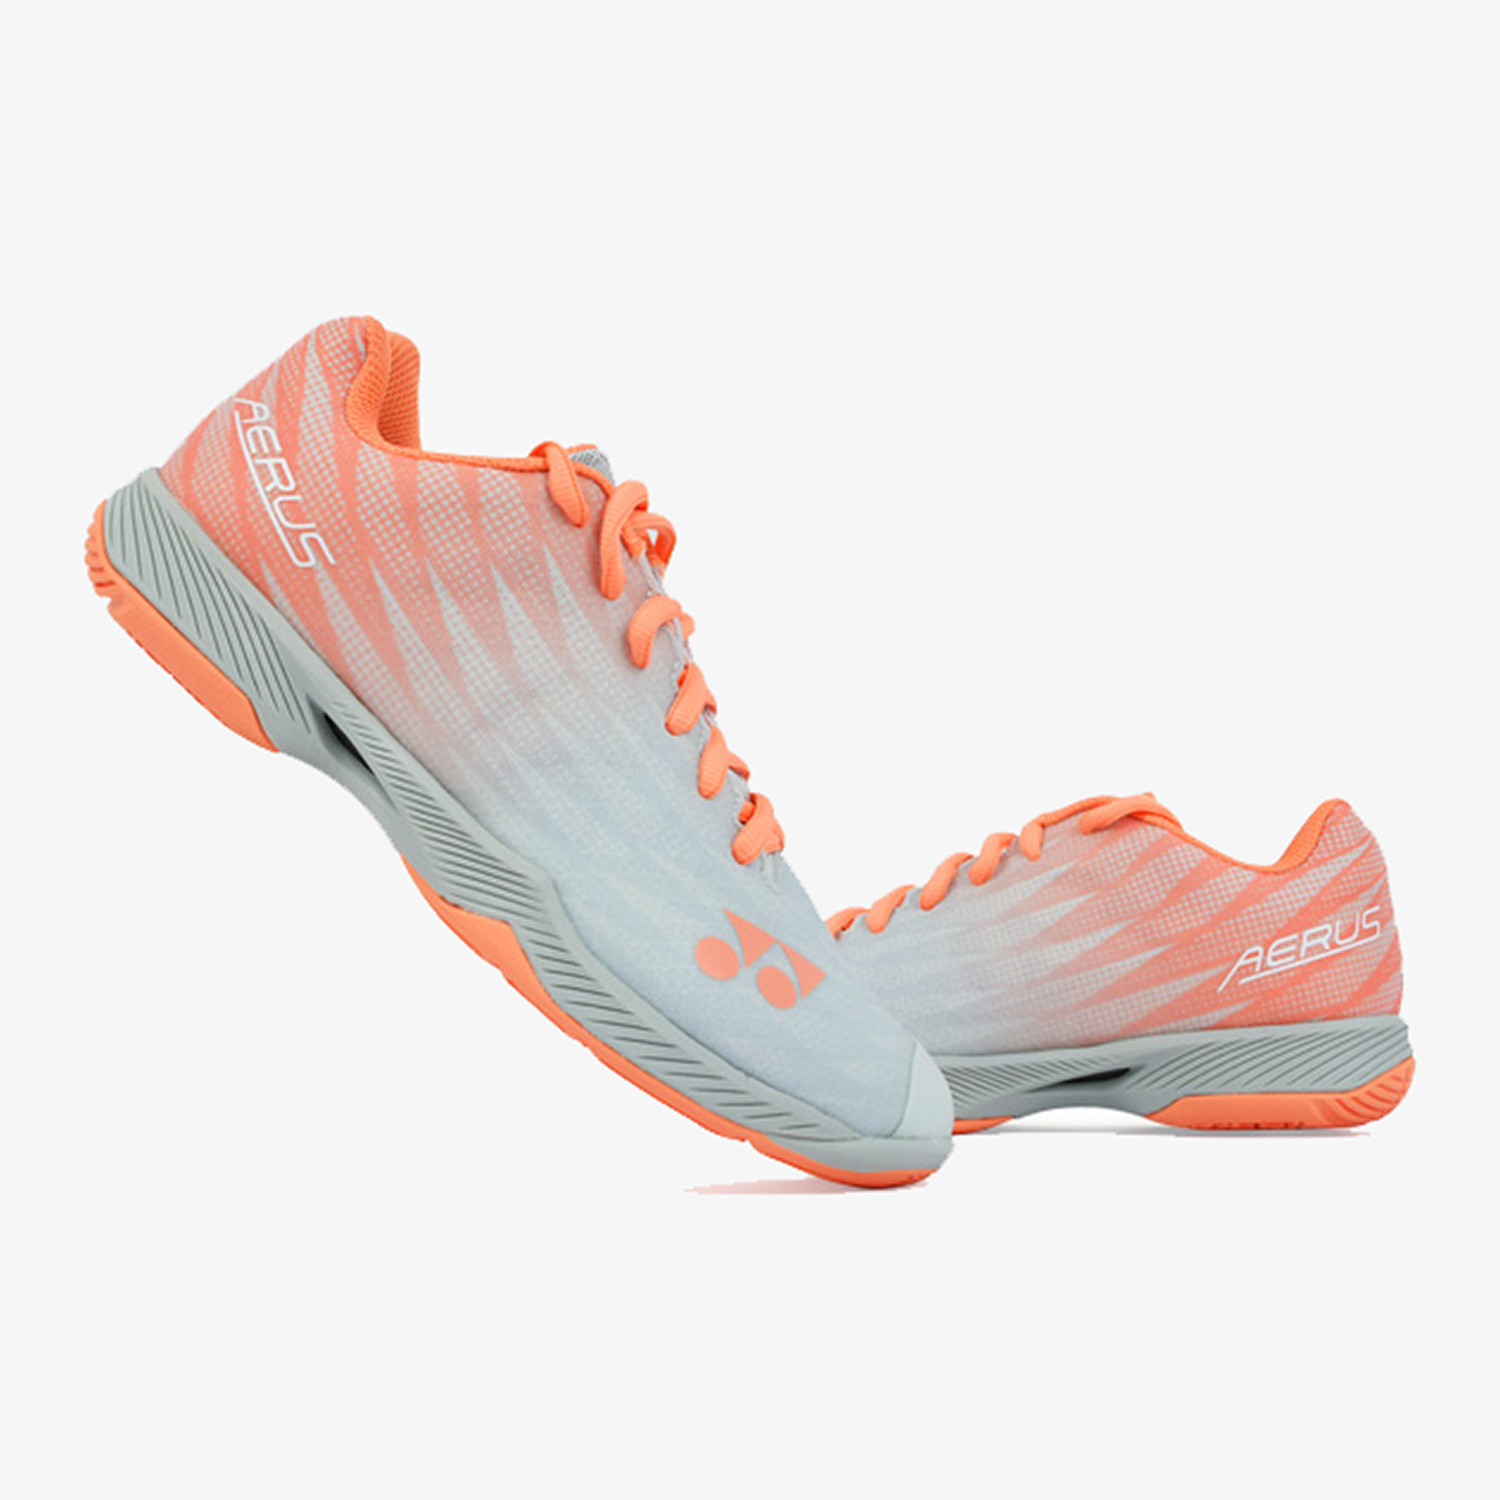 Yonex Aerus Z2 (Coral) Women's Shoe